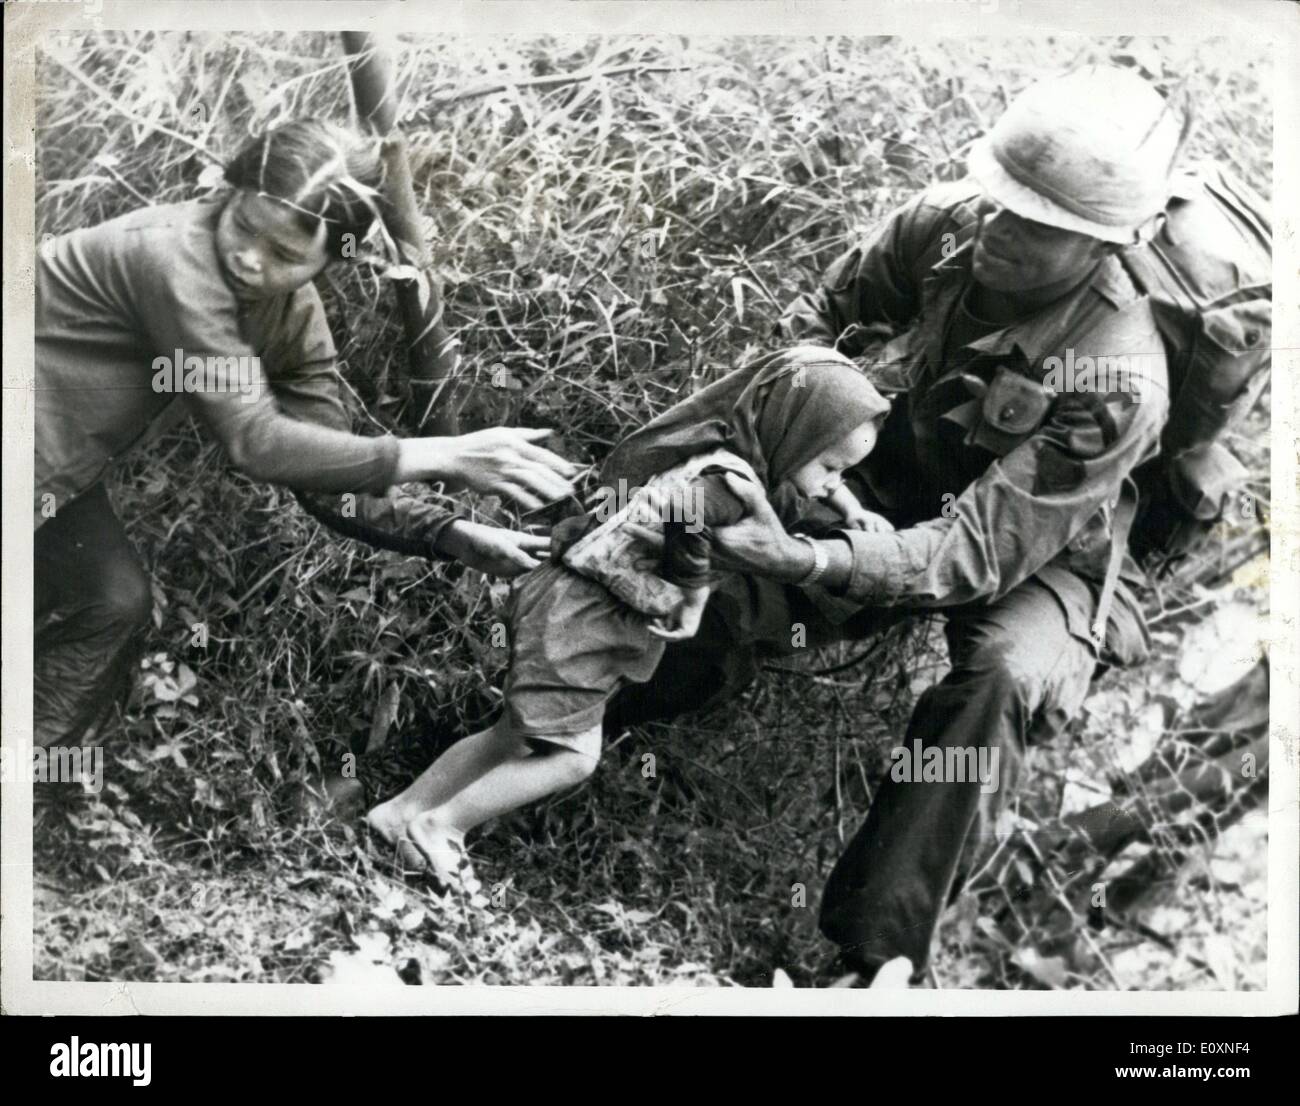 Mai 05, 1967 - La guerre au Vietnam. Un coup de main : photo montre un medie du 1er. La Division d'infanterie (Airmobile), aide l'enfant et des femmes vietnamiennes fuir le Viet Cong, durant la guerre du Vietnam. Banque D'Images